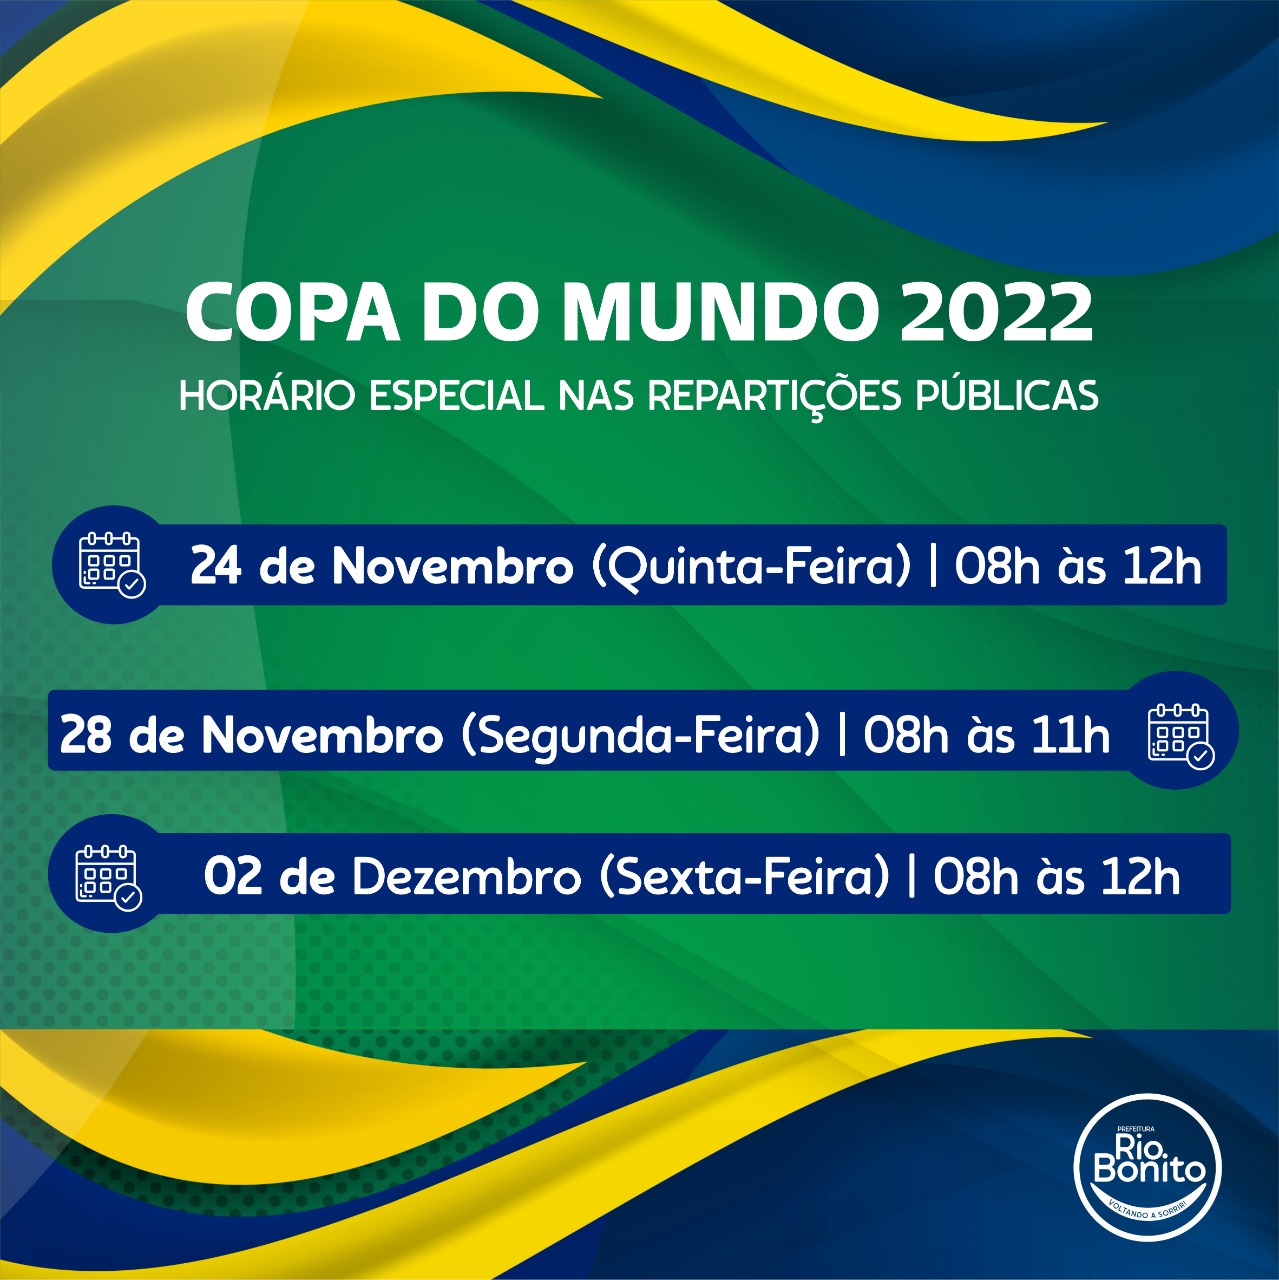 Horário e dias dos jogos do Brasil